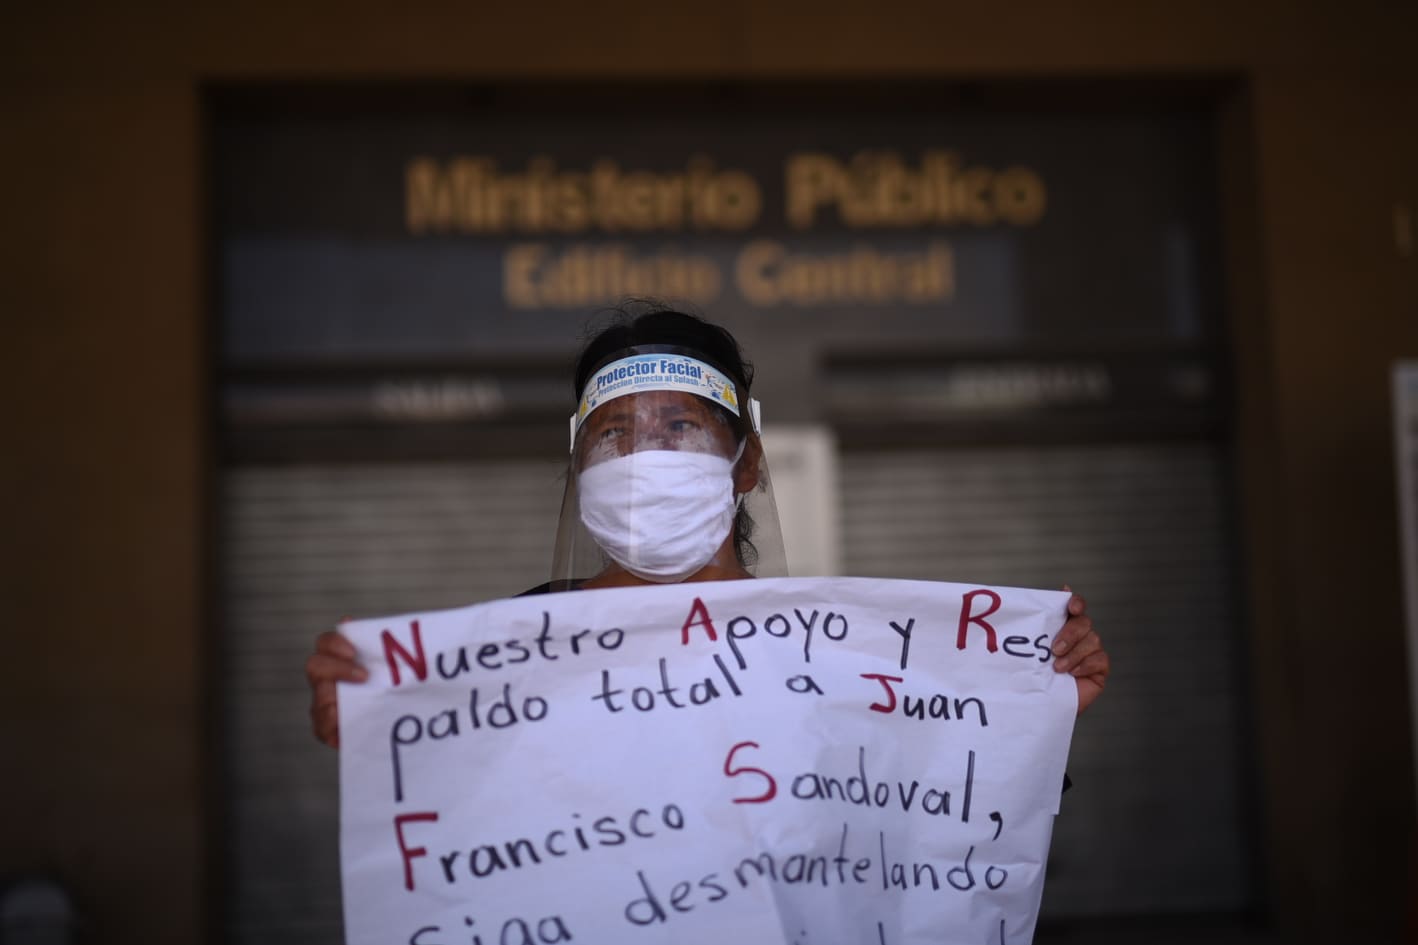 manifestación en el MInisterio Público para exigir la renuncia de la fiscal general Consuelo Porras